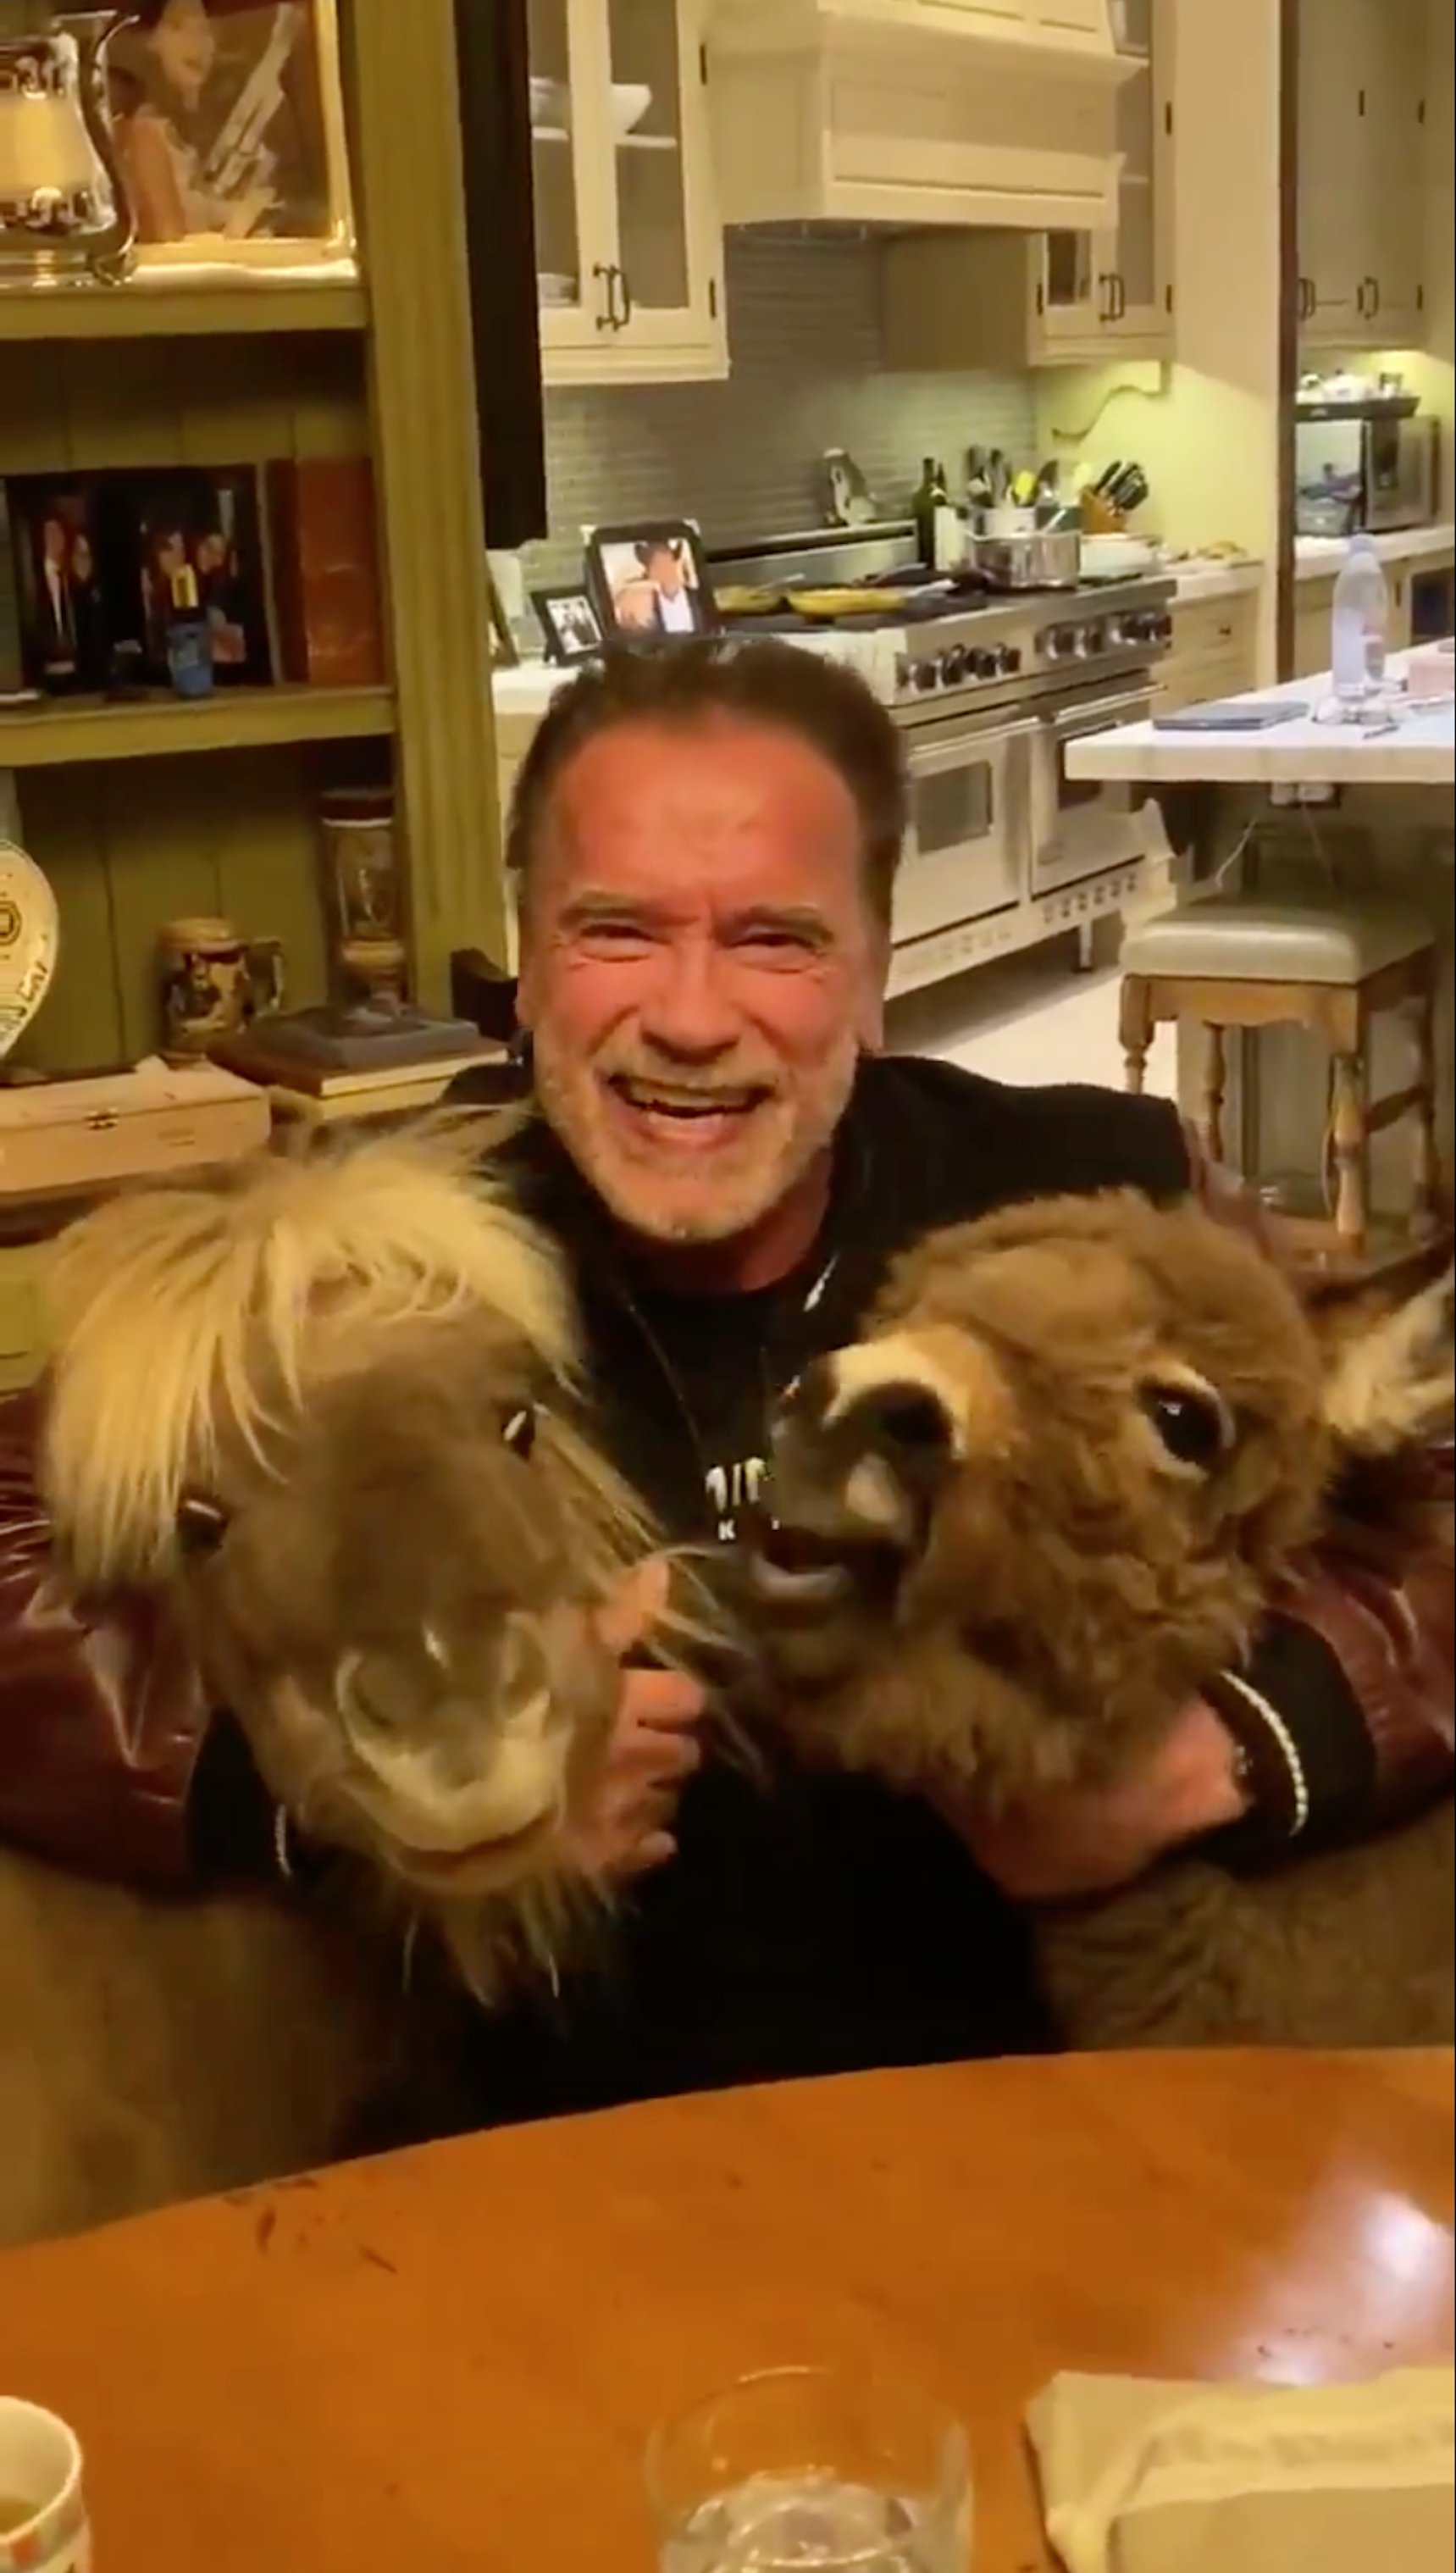 Inversemblant vídeo de Schwarzenegger rient i donant menjar ases: "tots a casa"